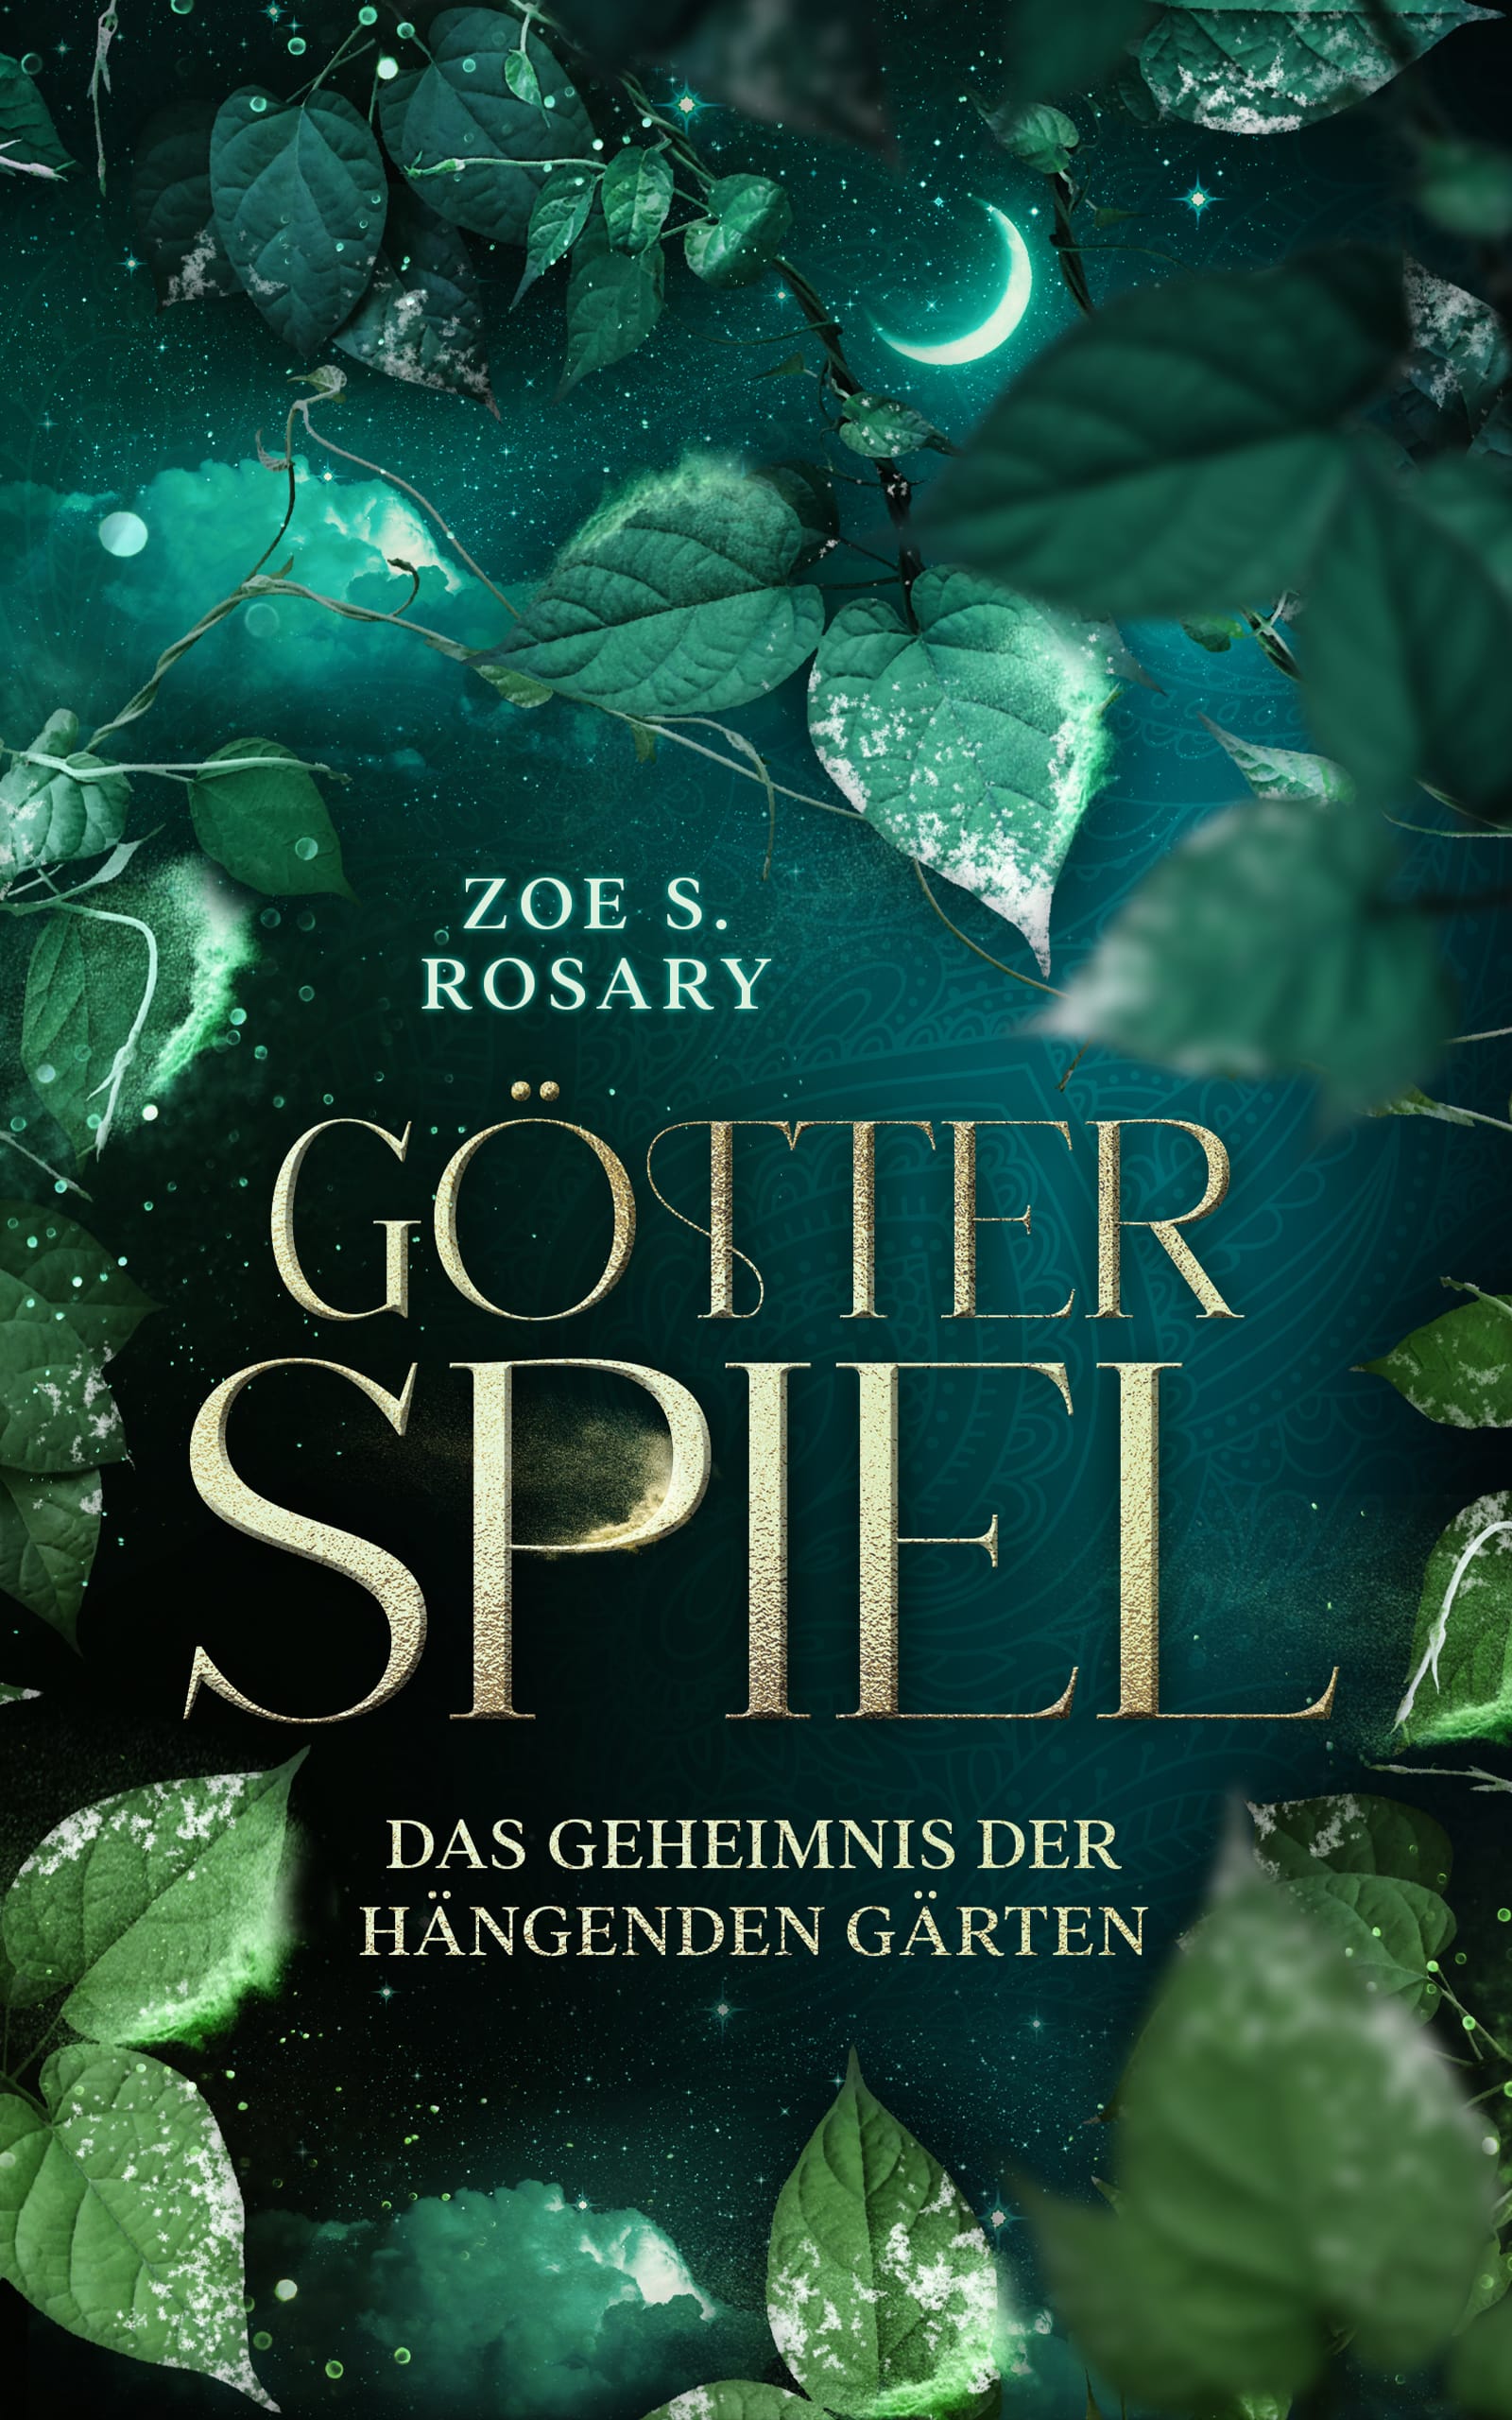 Götterspiel - Das Geheimnis der hängenden Gärten von Zoe S. Rosary - High Fantasy Romance